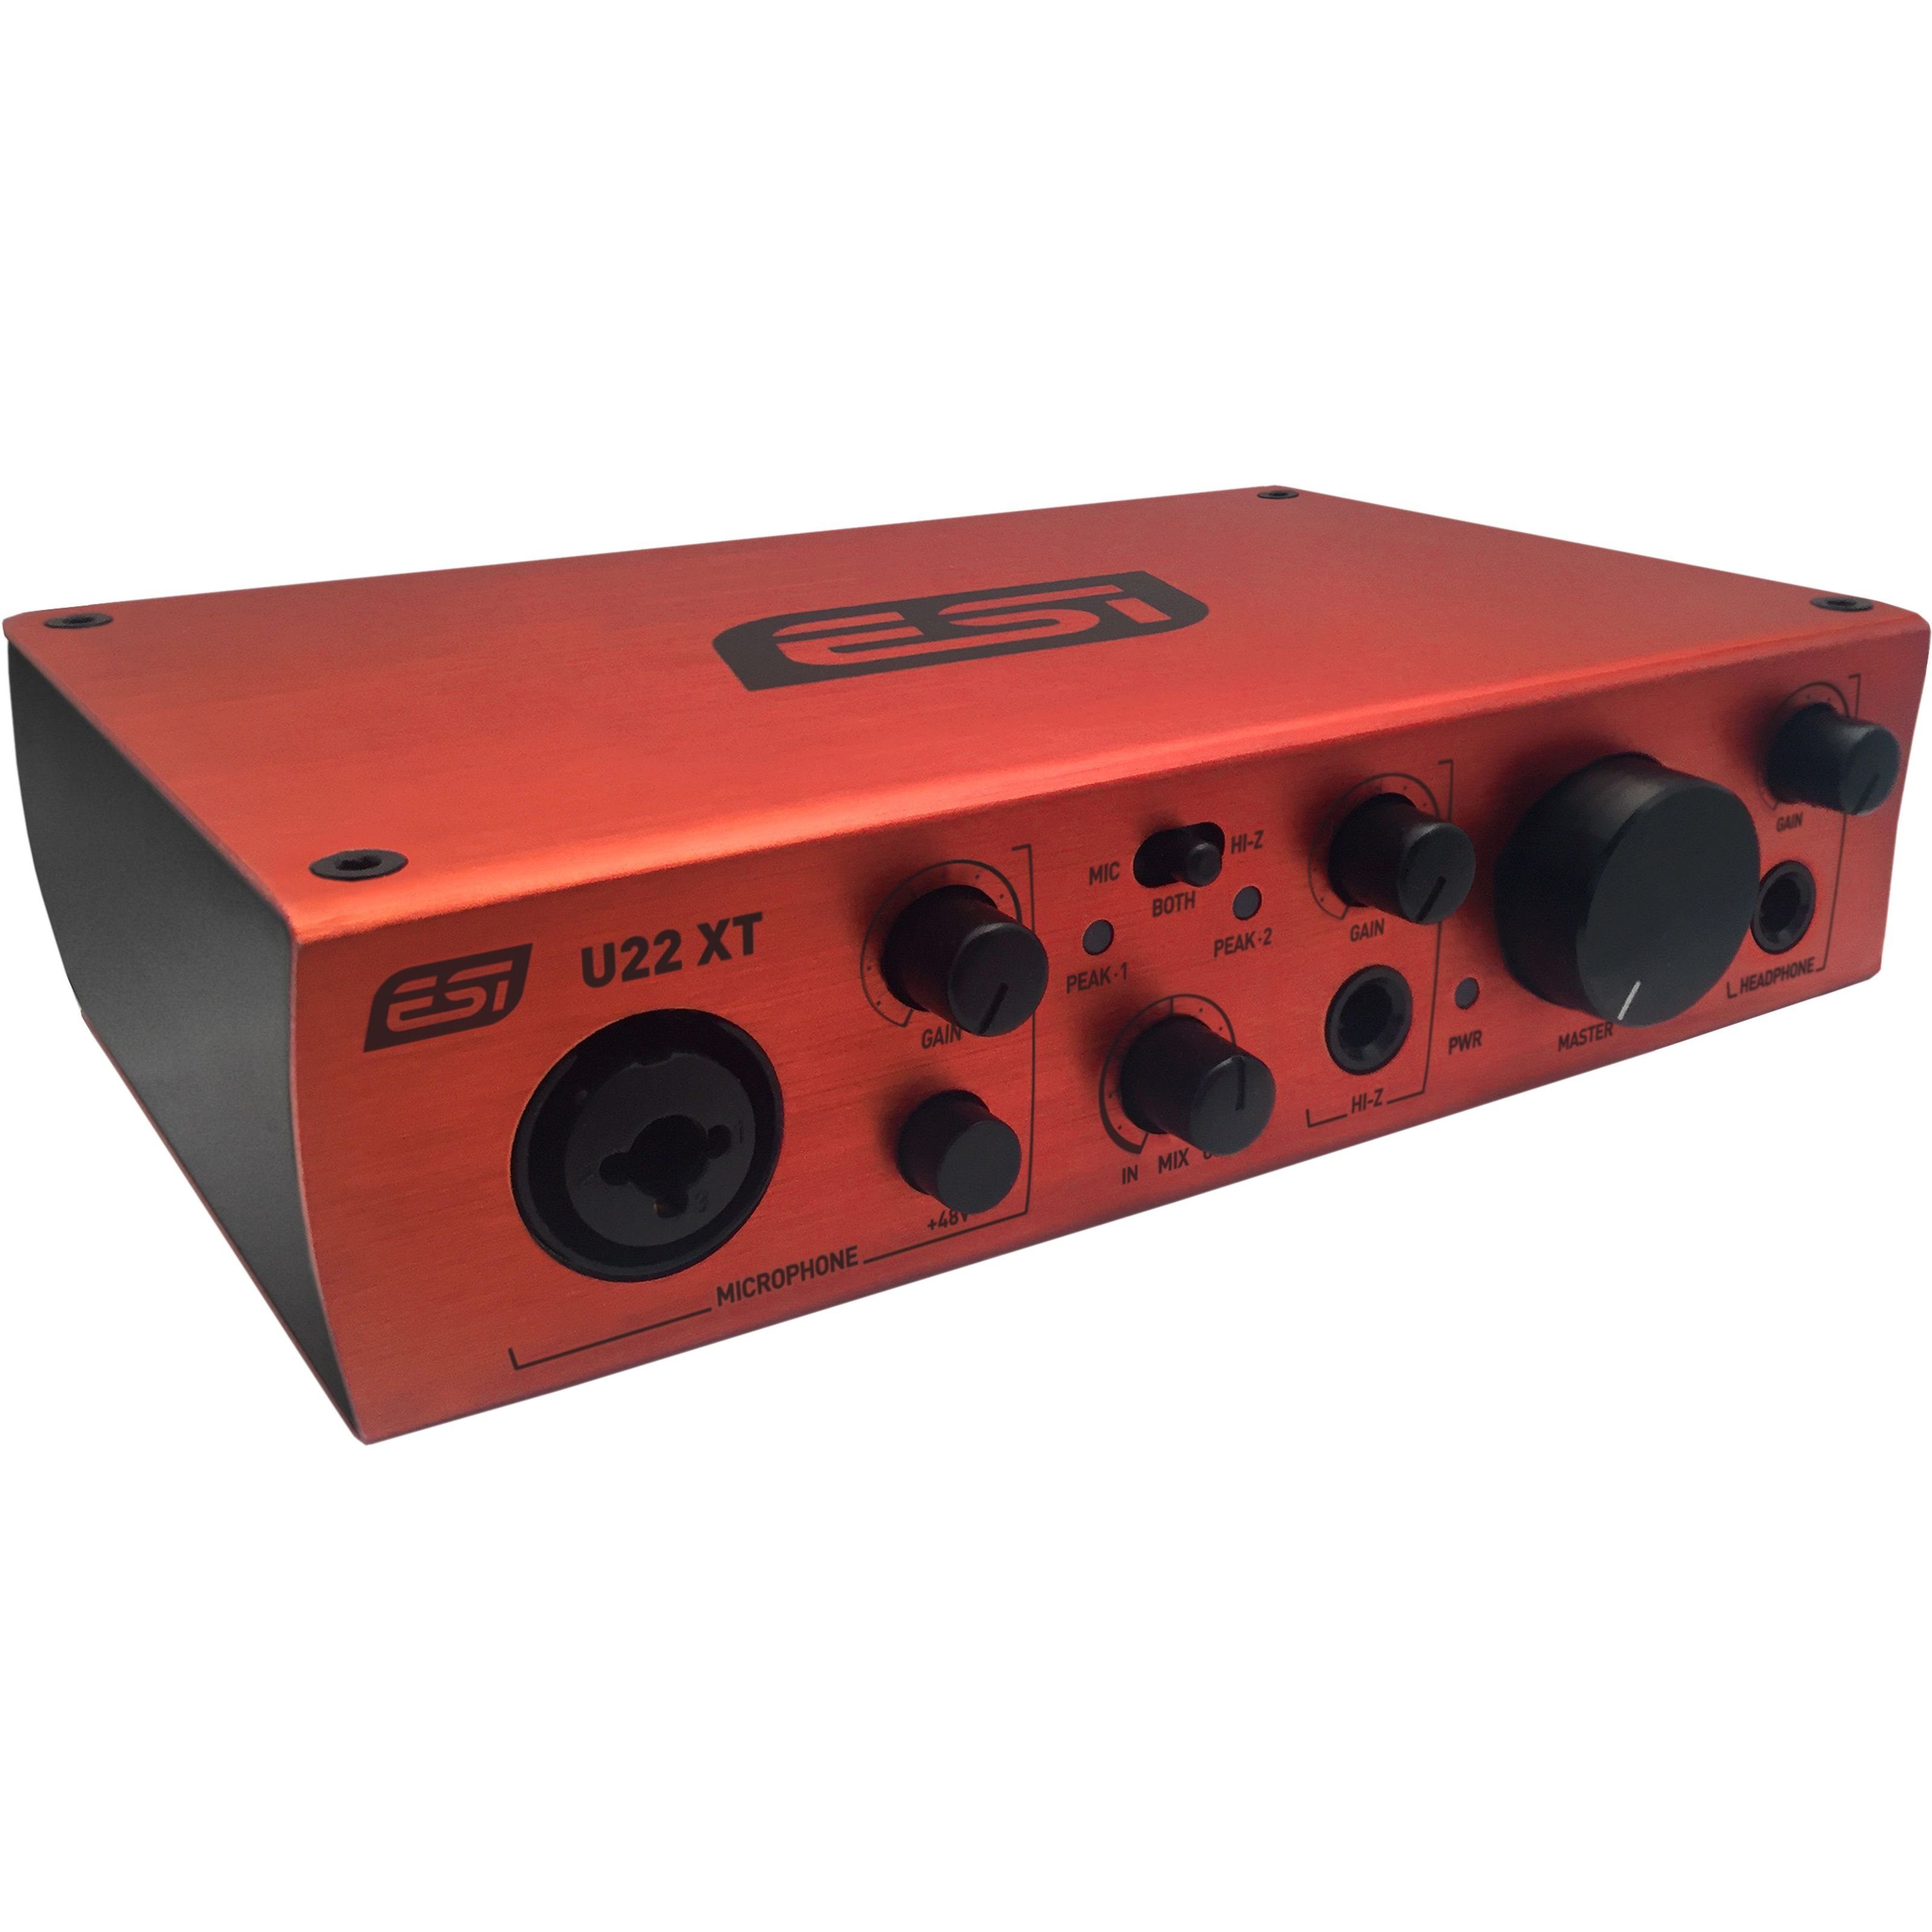 ESI Digitales Aufnahmegerät (U22 XT - USB Audio Interface)